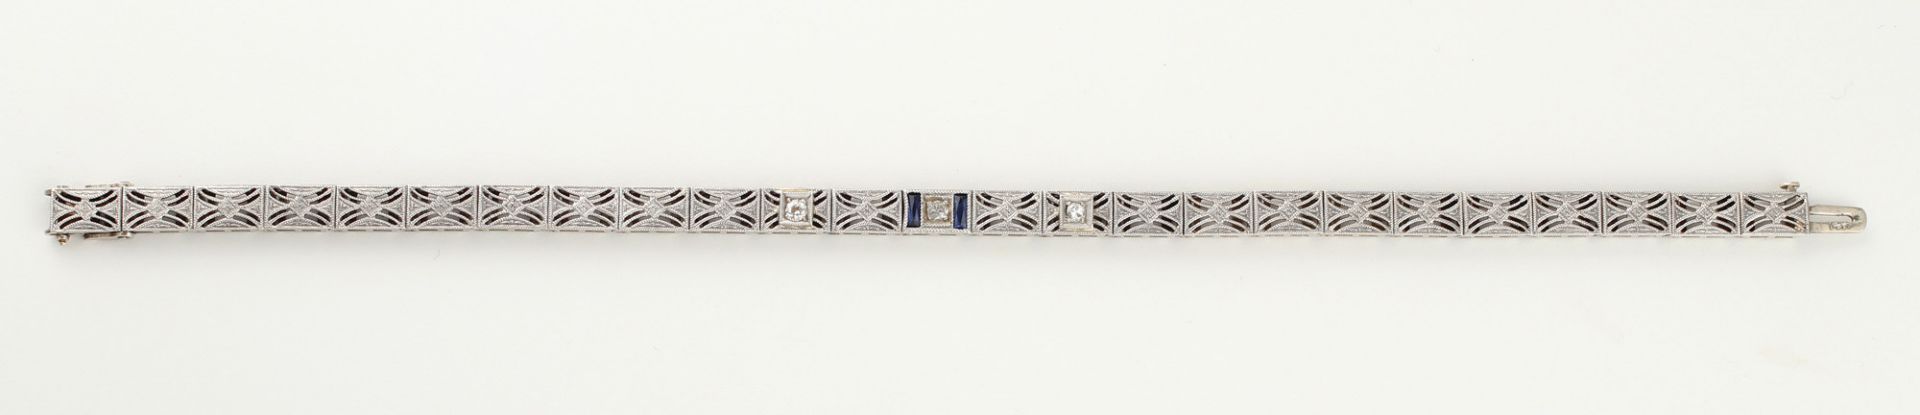 Armband, um 1930-40